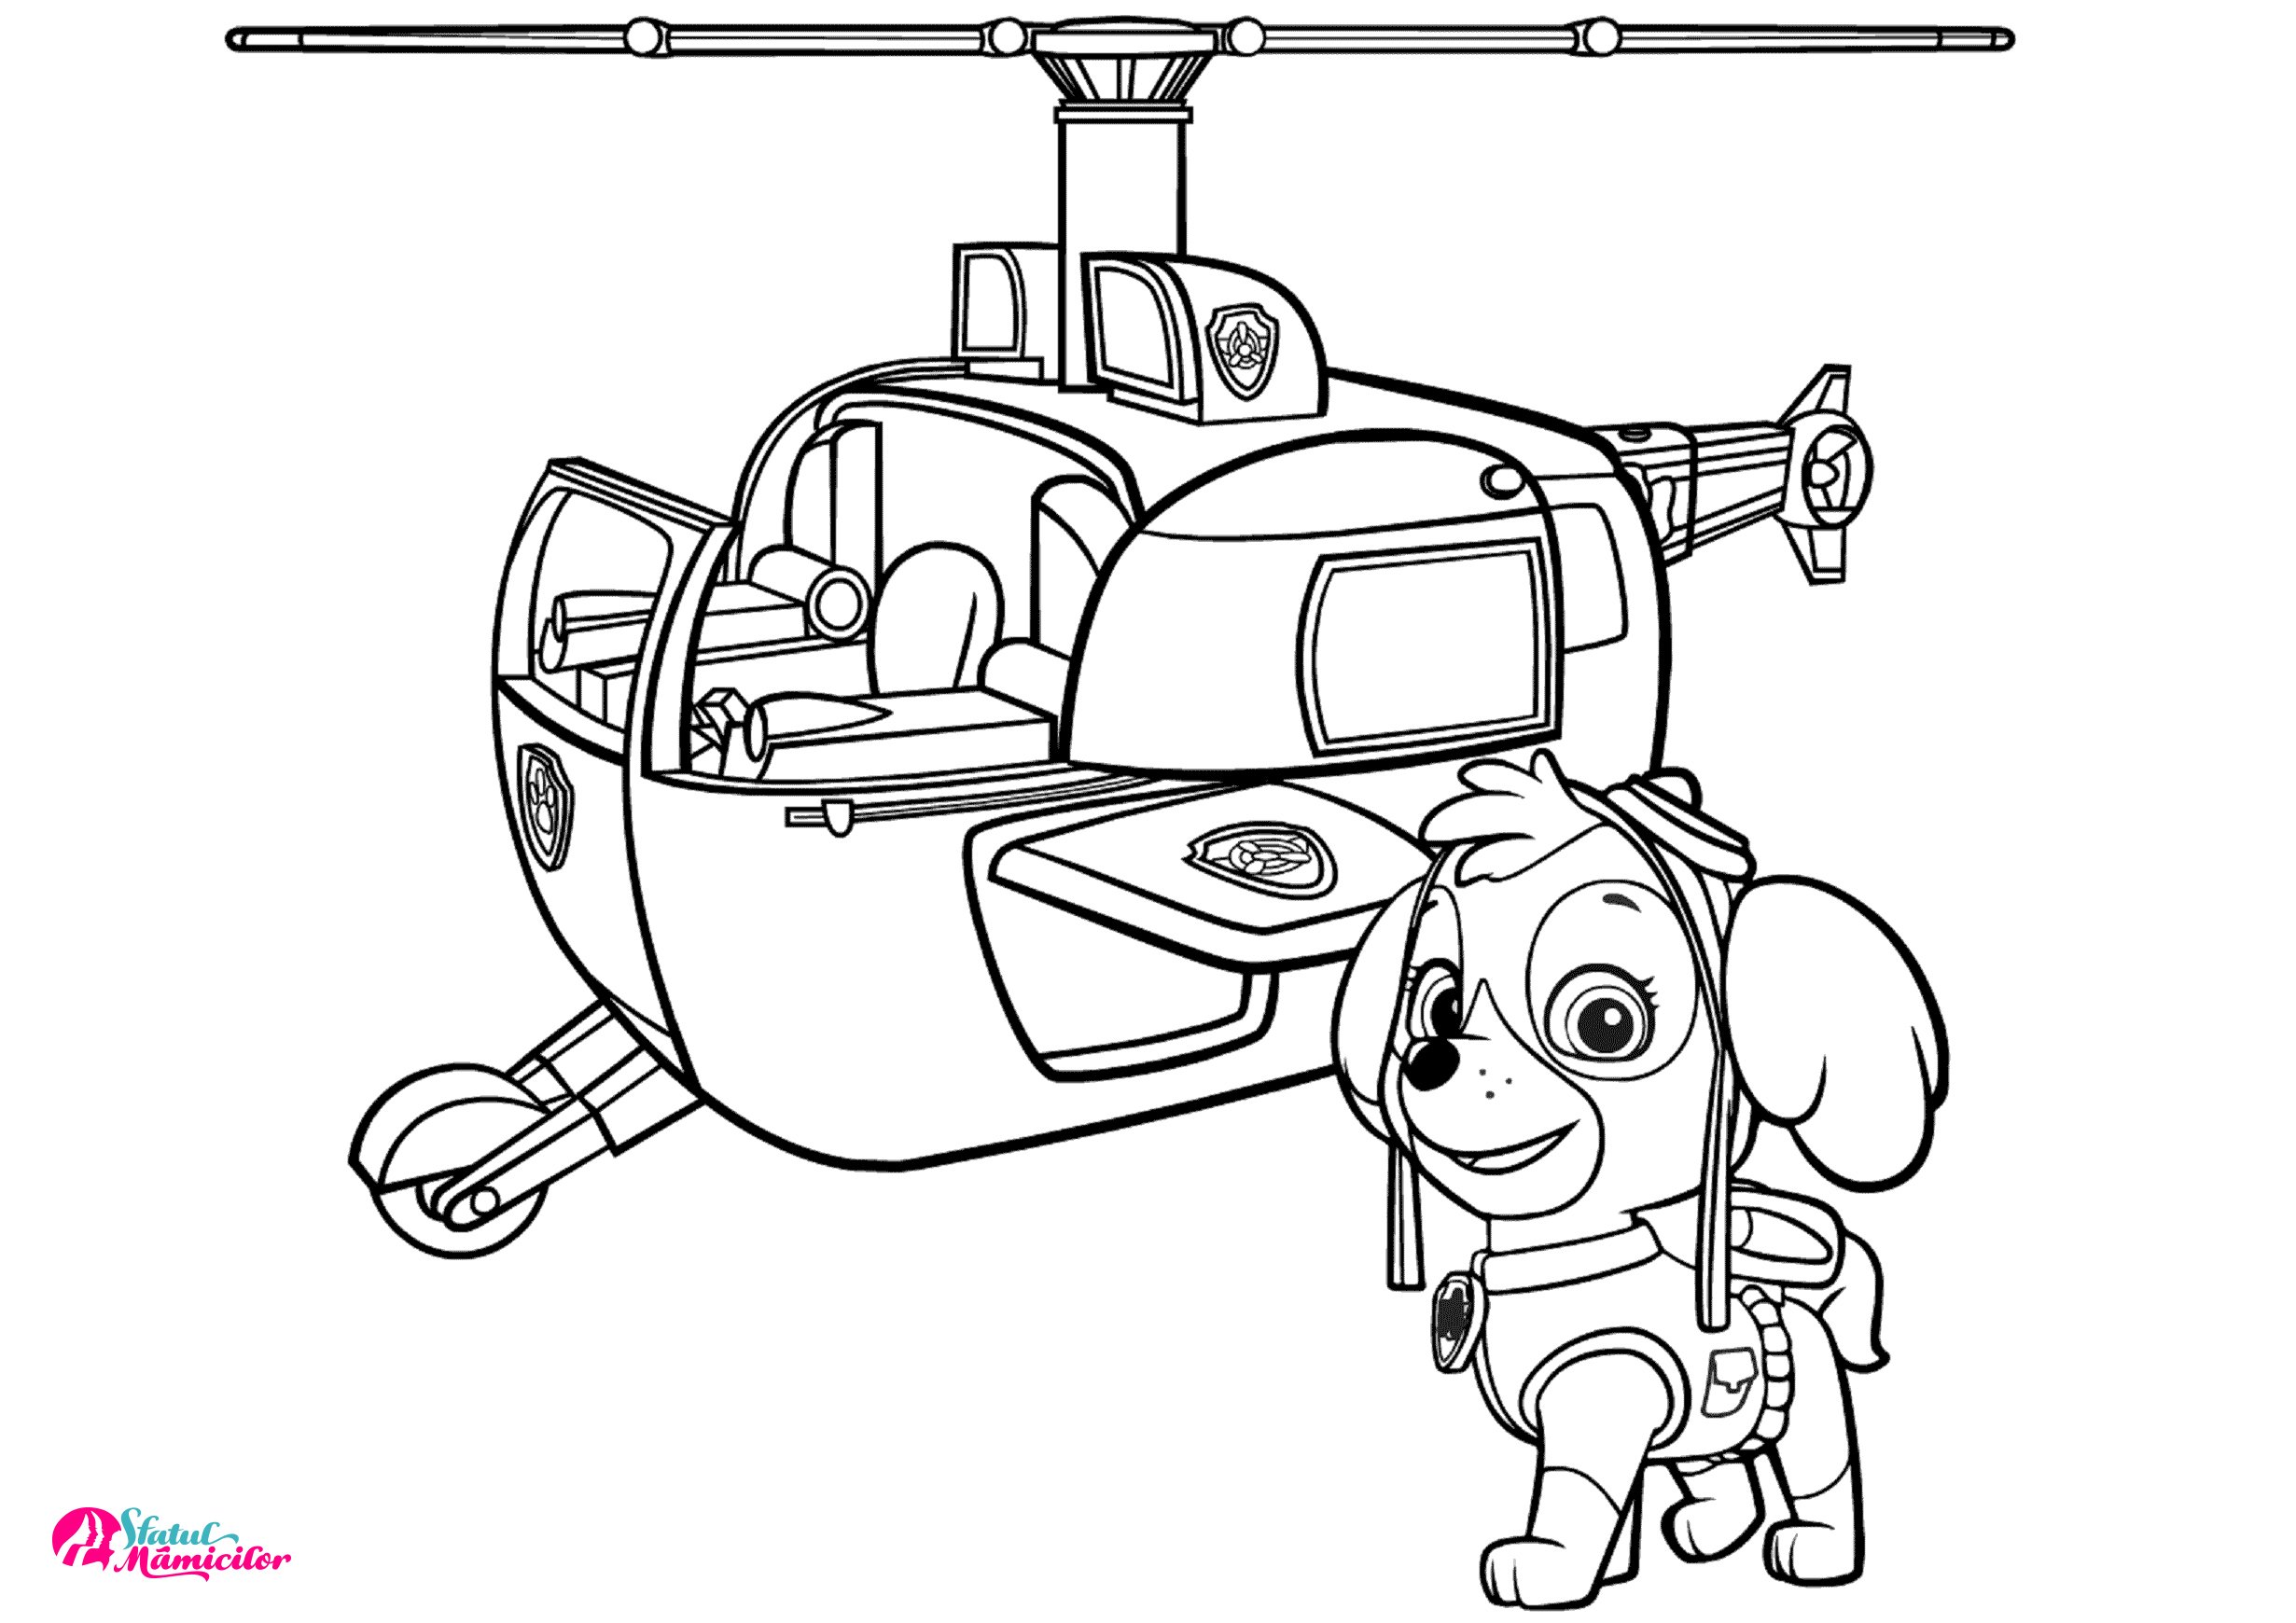 Skye si Elicopterul - Plansa de colorat